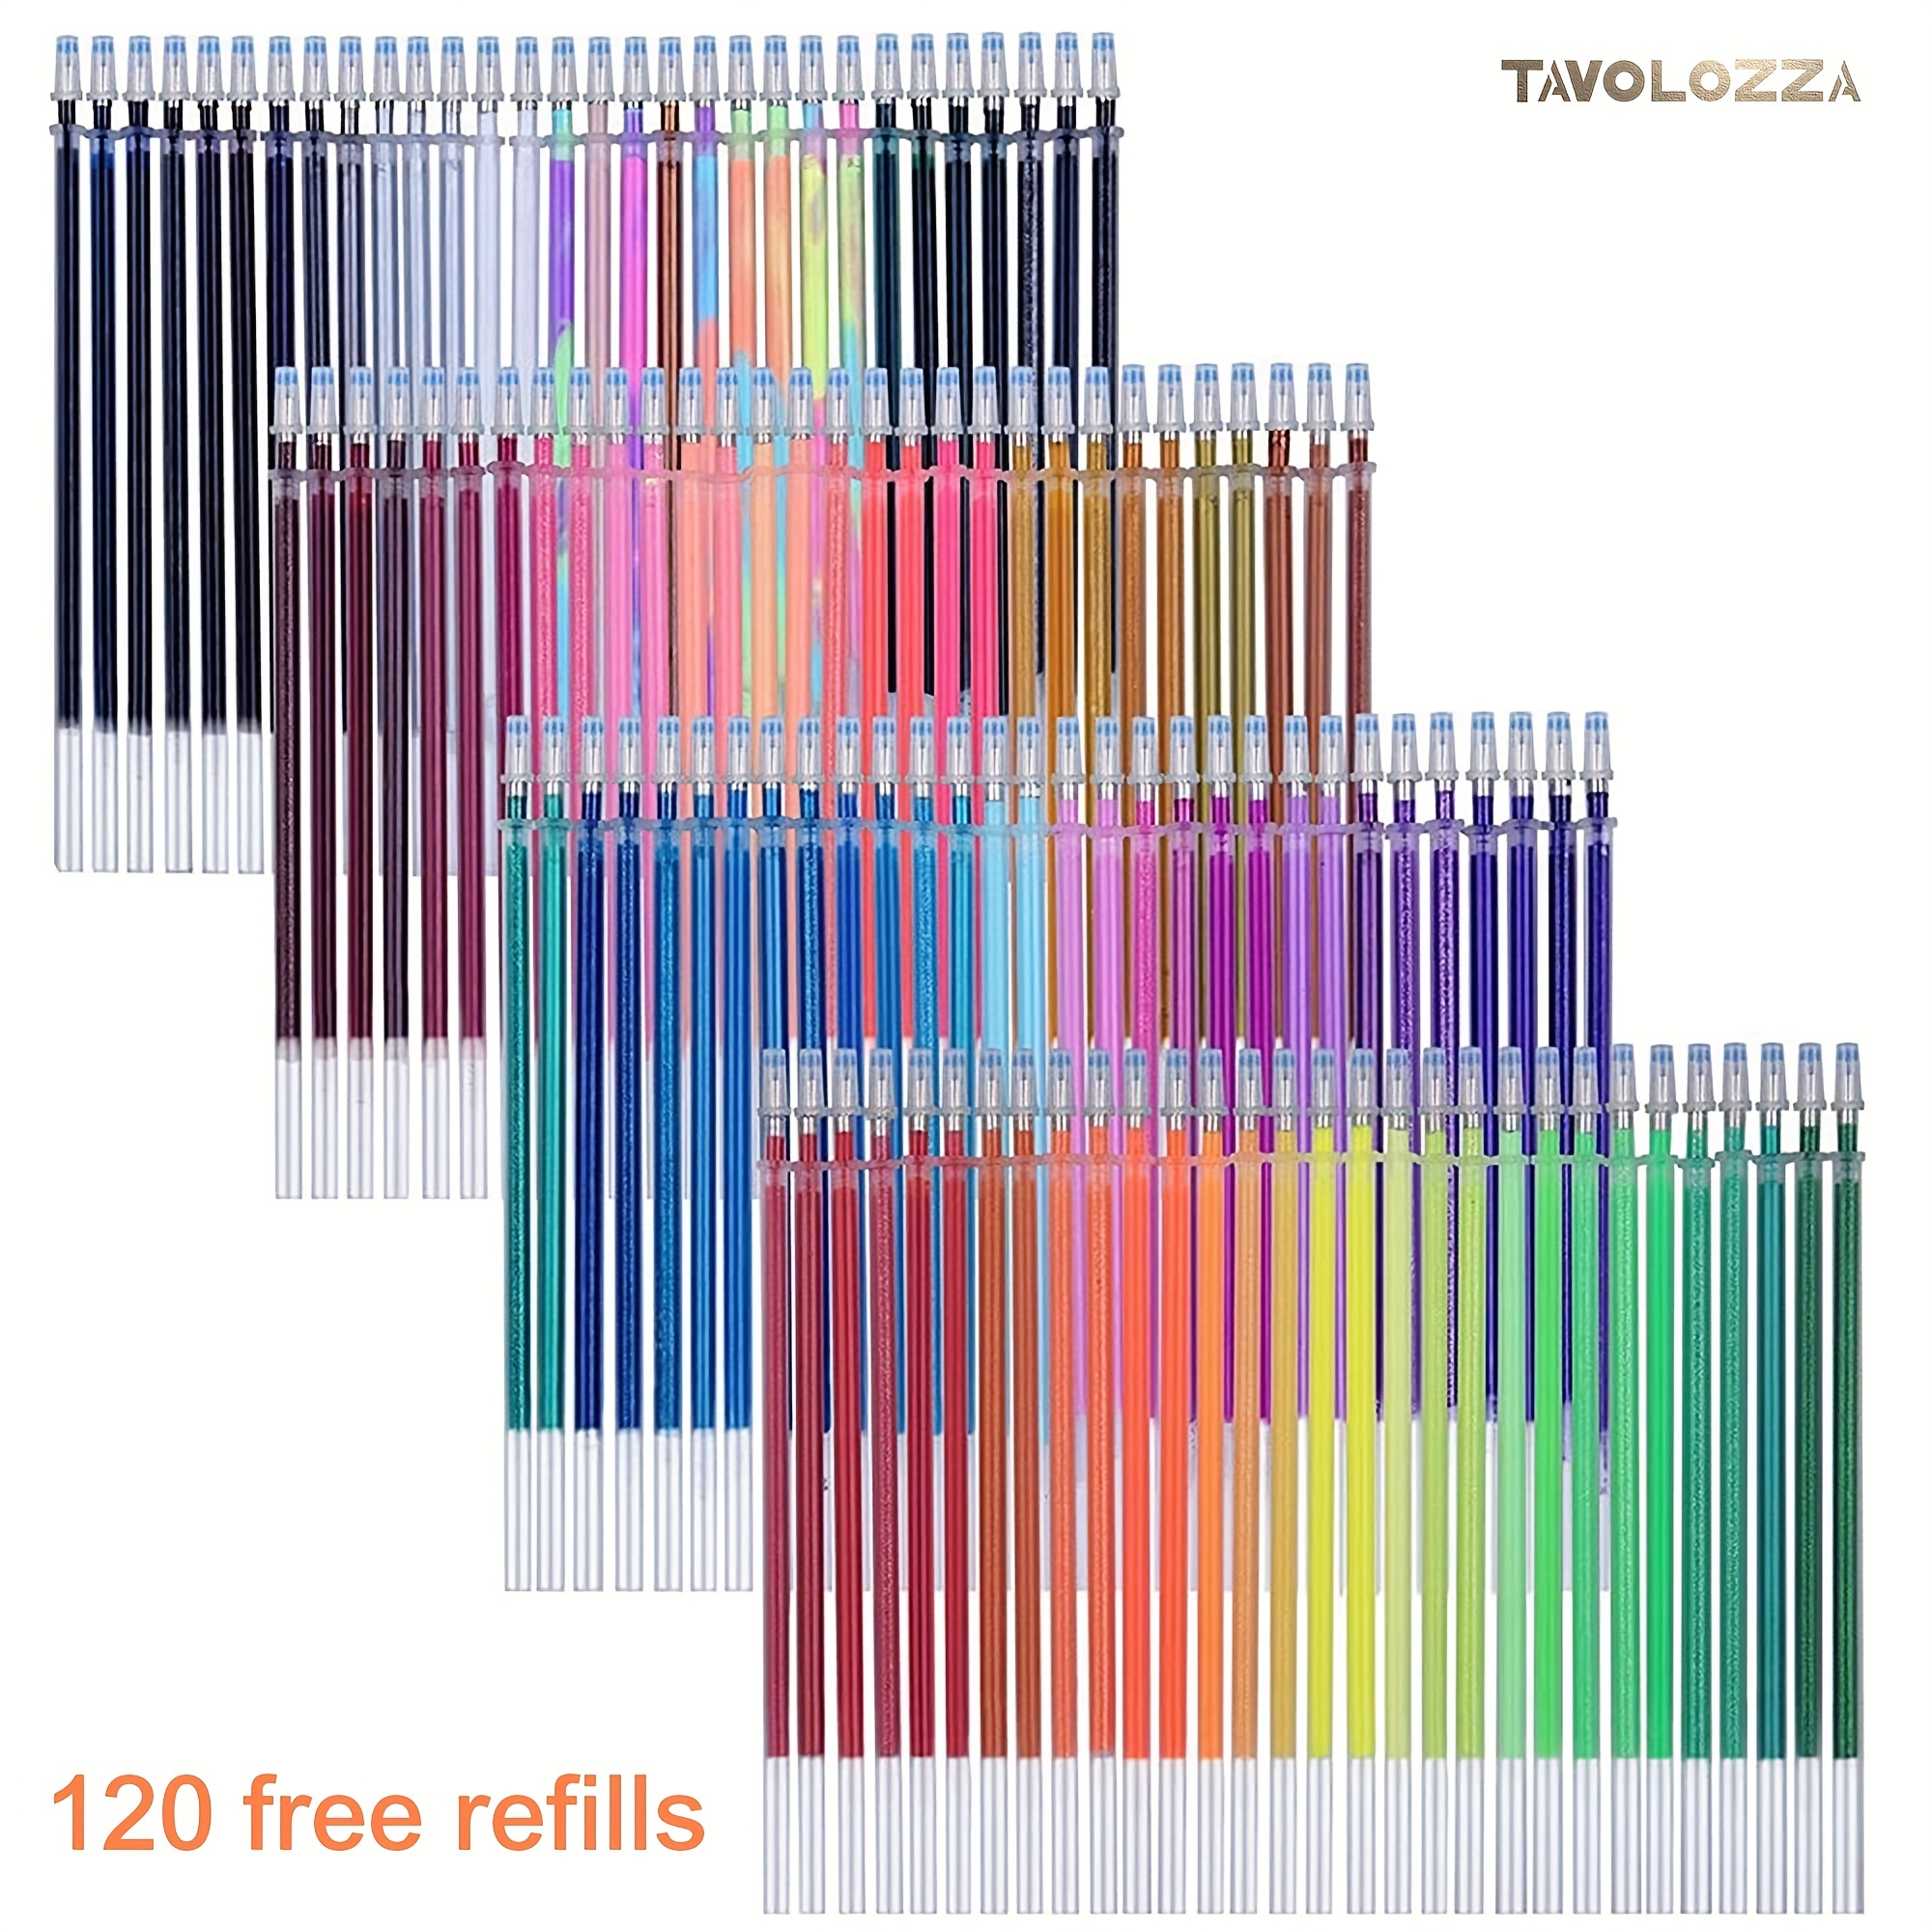 120 Color Artist Gel Pen Set includes 28 Glitter Gel Pens 12